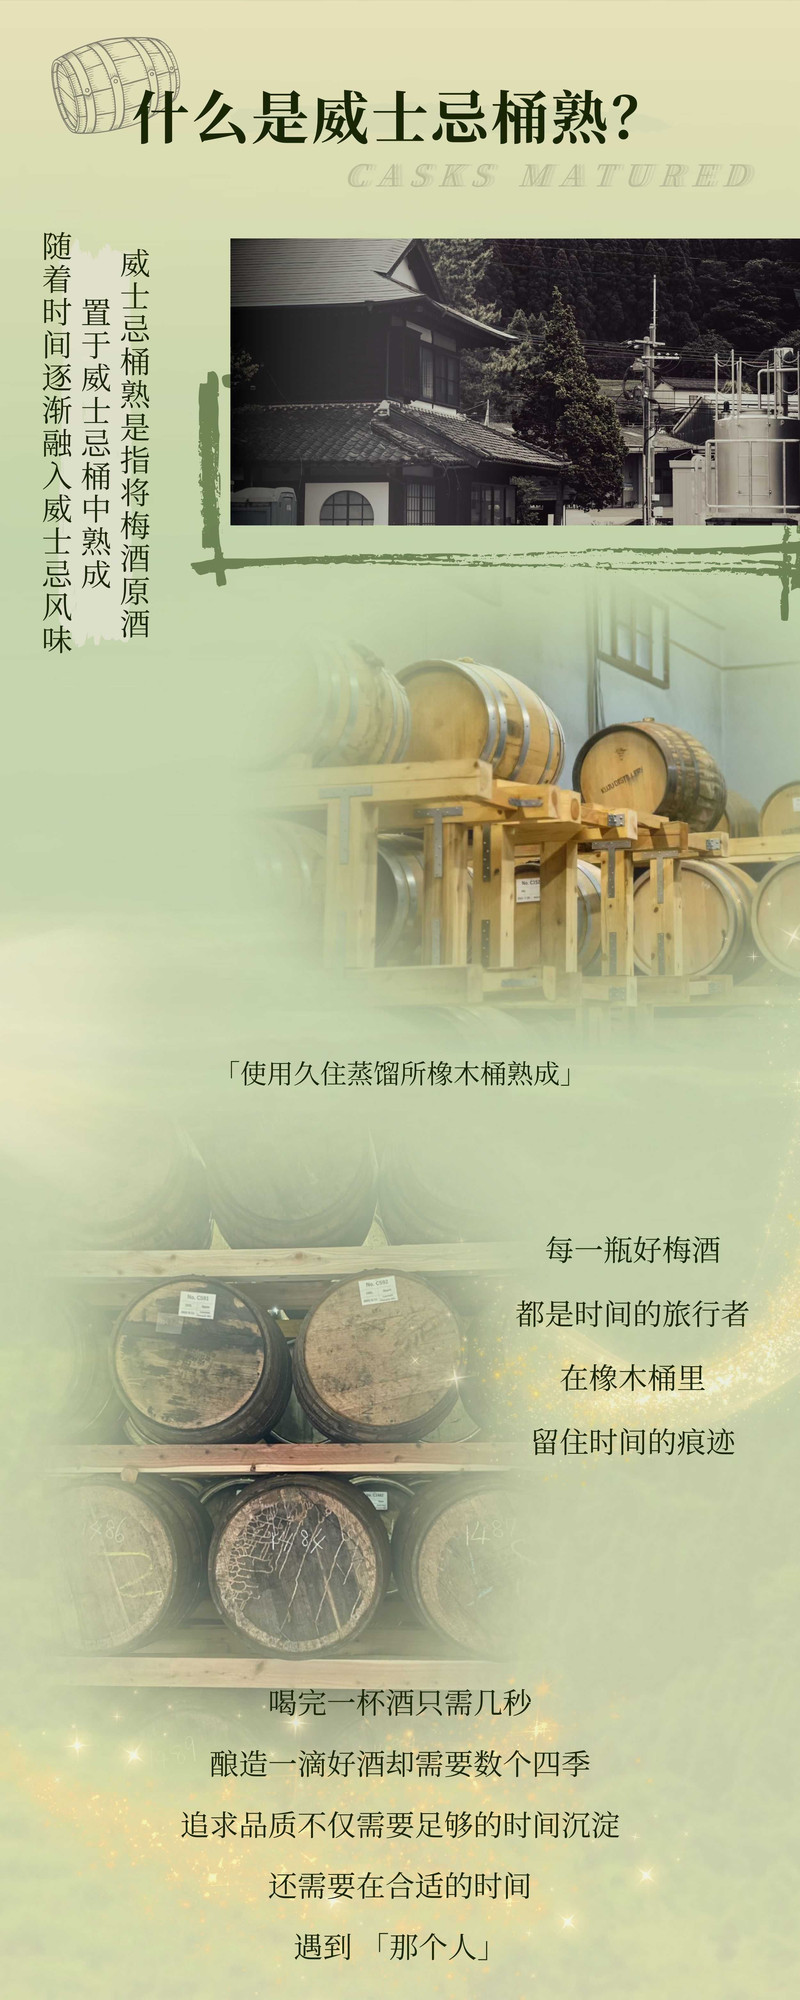  津崎 原瓶进口上质梅酒一年熟成限定版 威士忌桶内熟成1年的本格梅酒